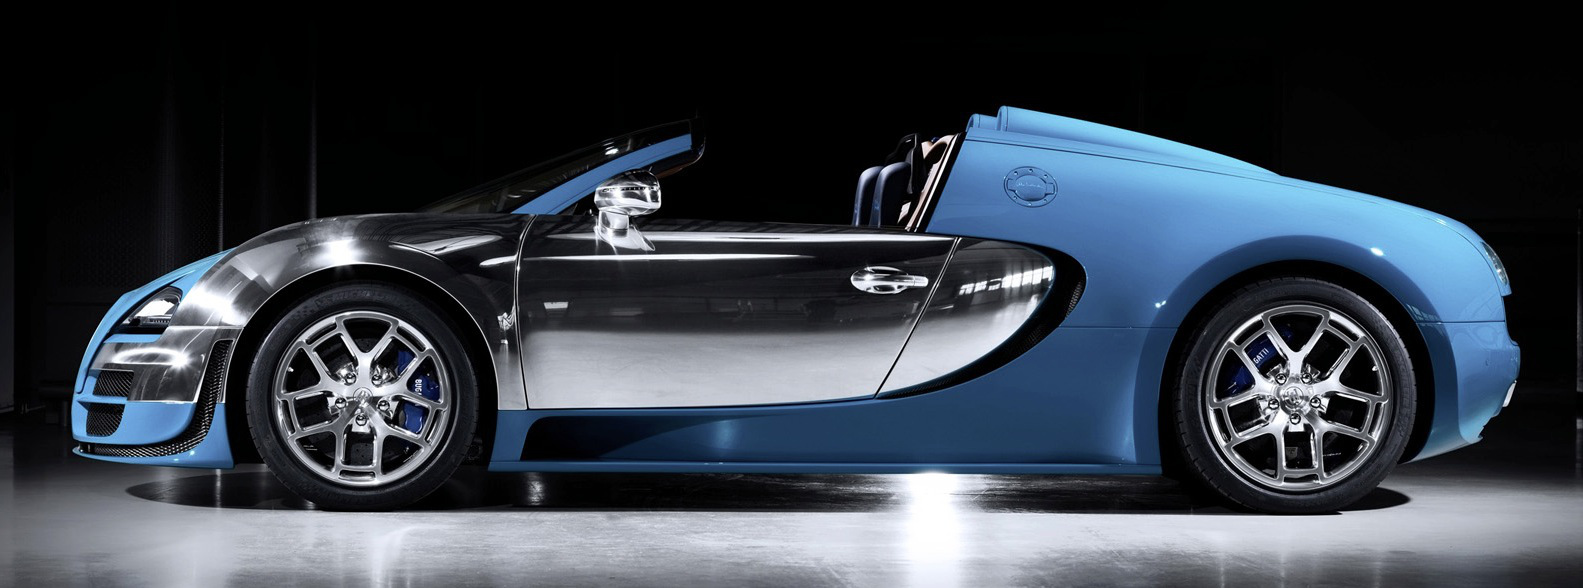 6 моделей Bugatti Veyron, о которых должен знать каждый 2